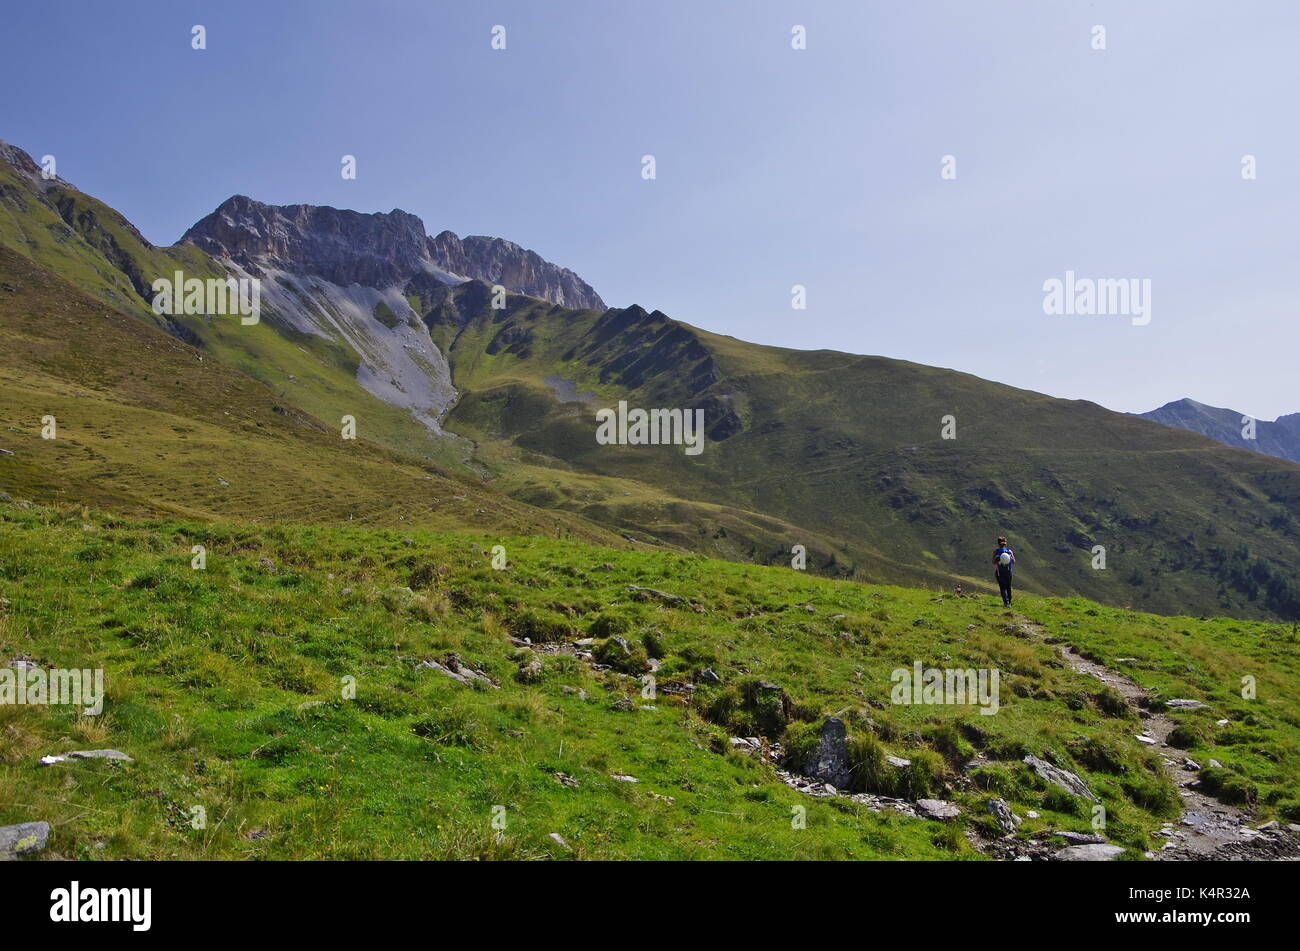 Les jeunes femaie trekker la randonnée sur un sentier dans les Dolomites, Italie, vers le sommet du Monte cavallino sur la frontière autrichienne Banque D'Images